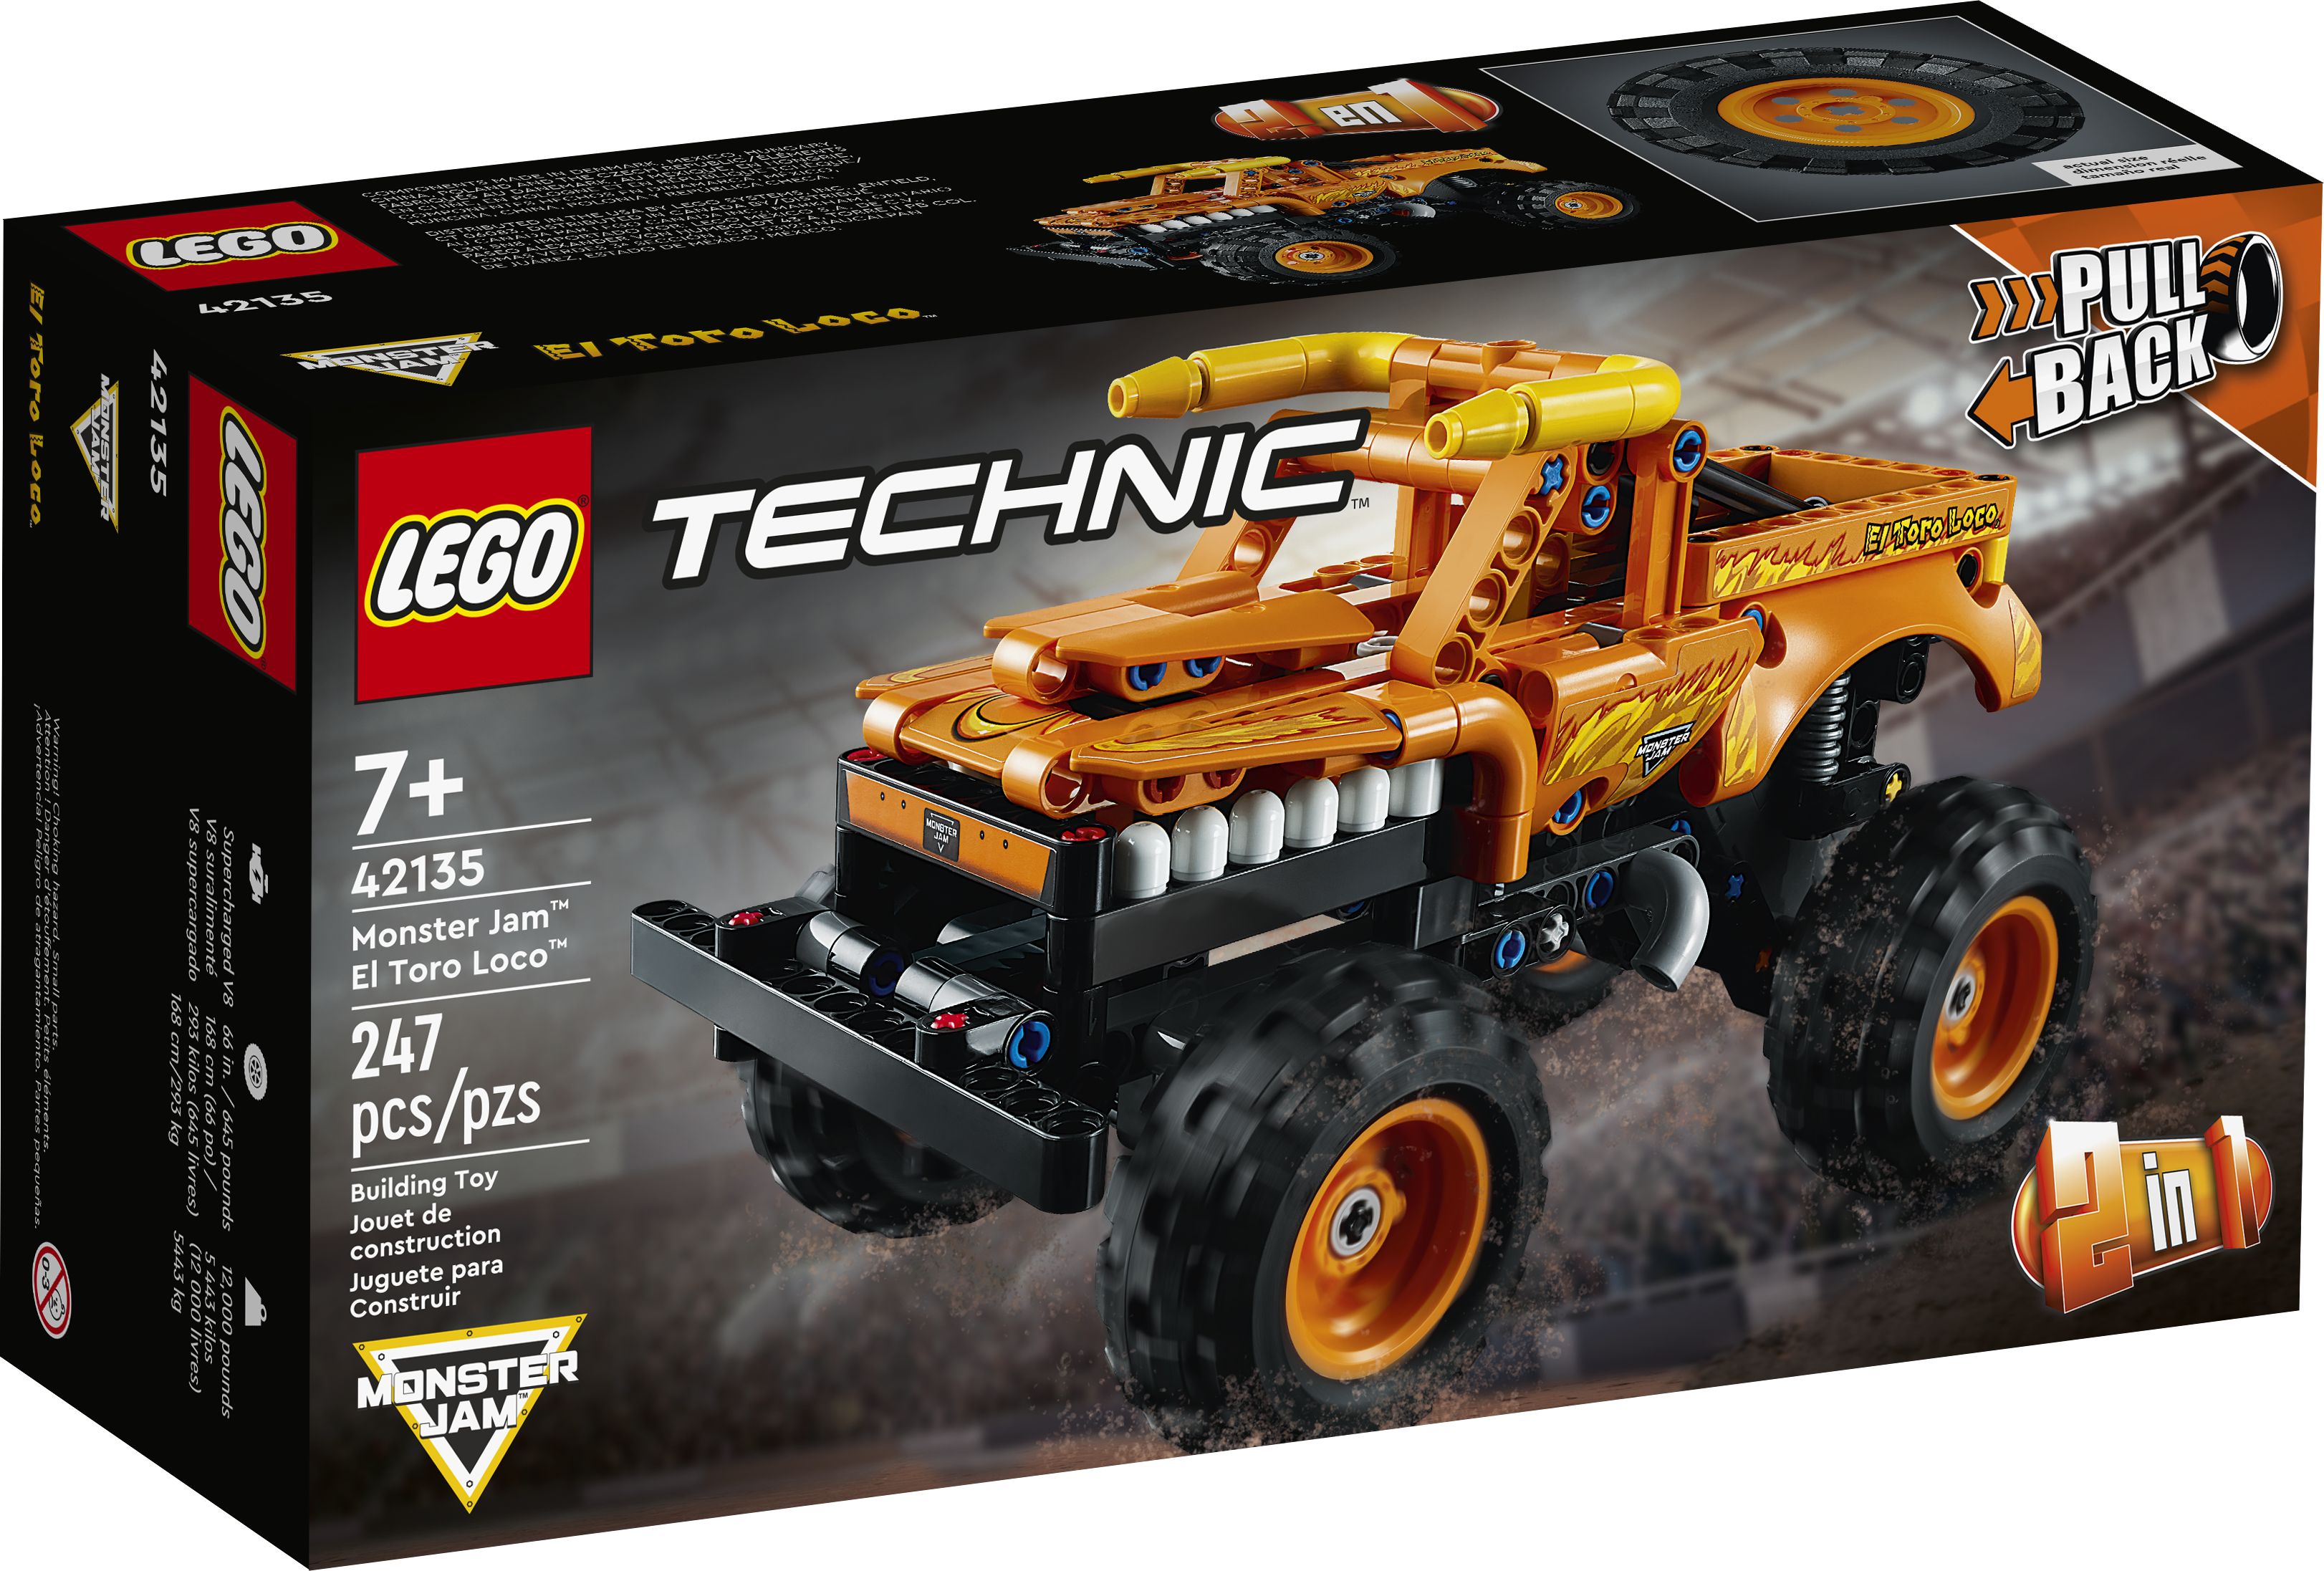 LEGO Technic 42135 Monster Jam™ El Toro Loco™ LEGO_42135_Box1_v39.jpg